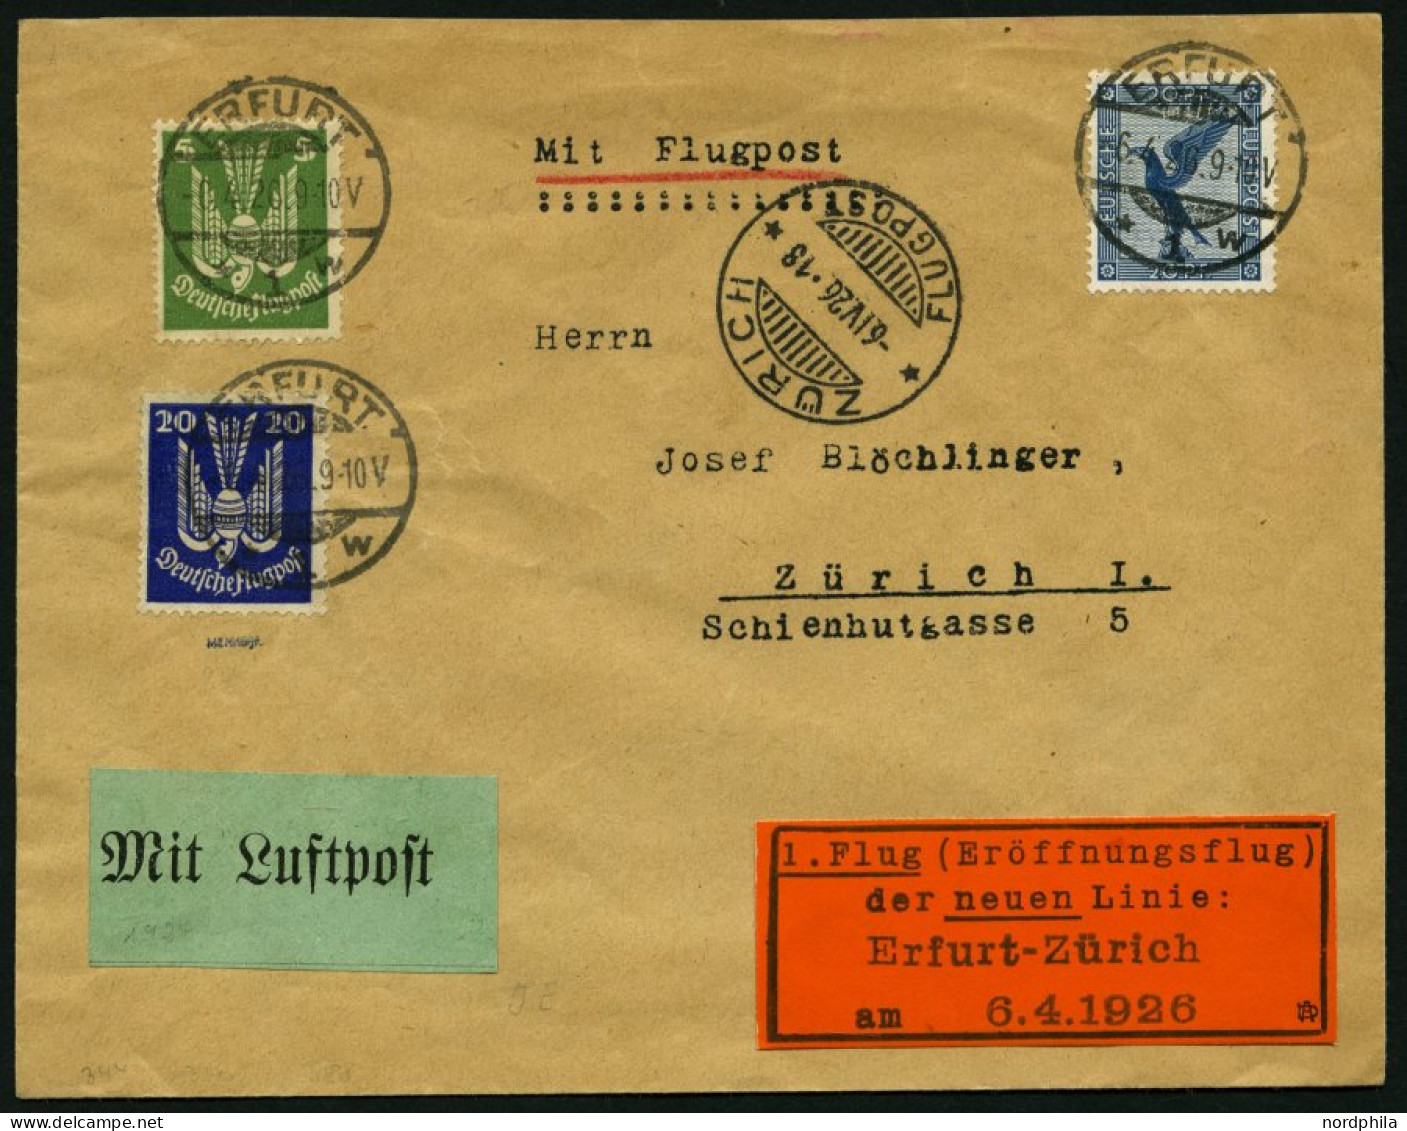 ERST-UND ERÖFFNUNGSFLÜGE 26.7.09 BRIEF, 6.4.1926, Erfurt - Zürich, Prachtbrief, RR! - Zeppelines